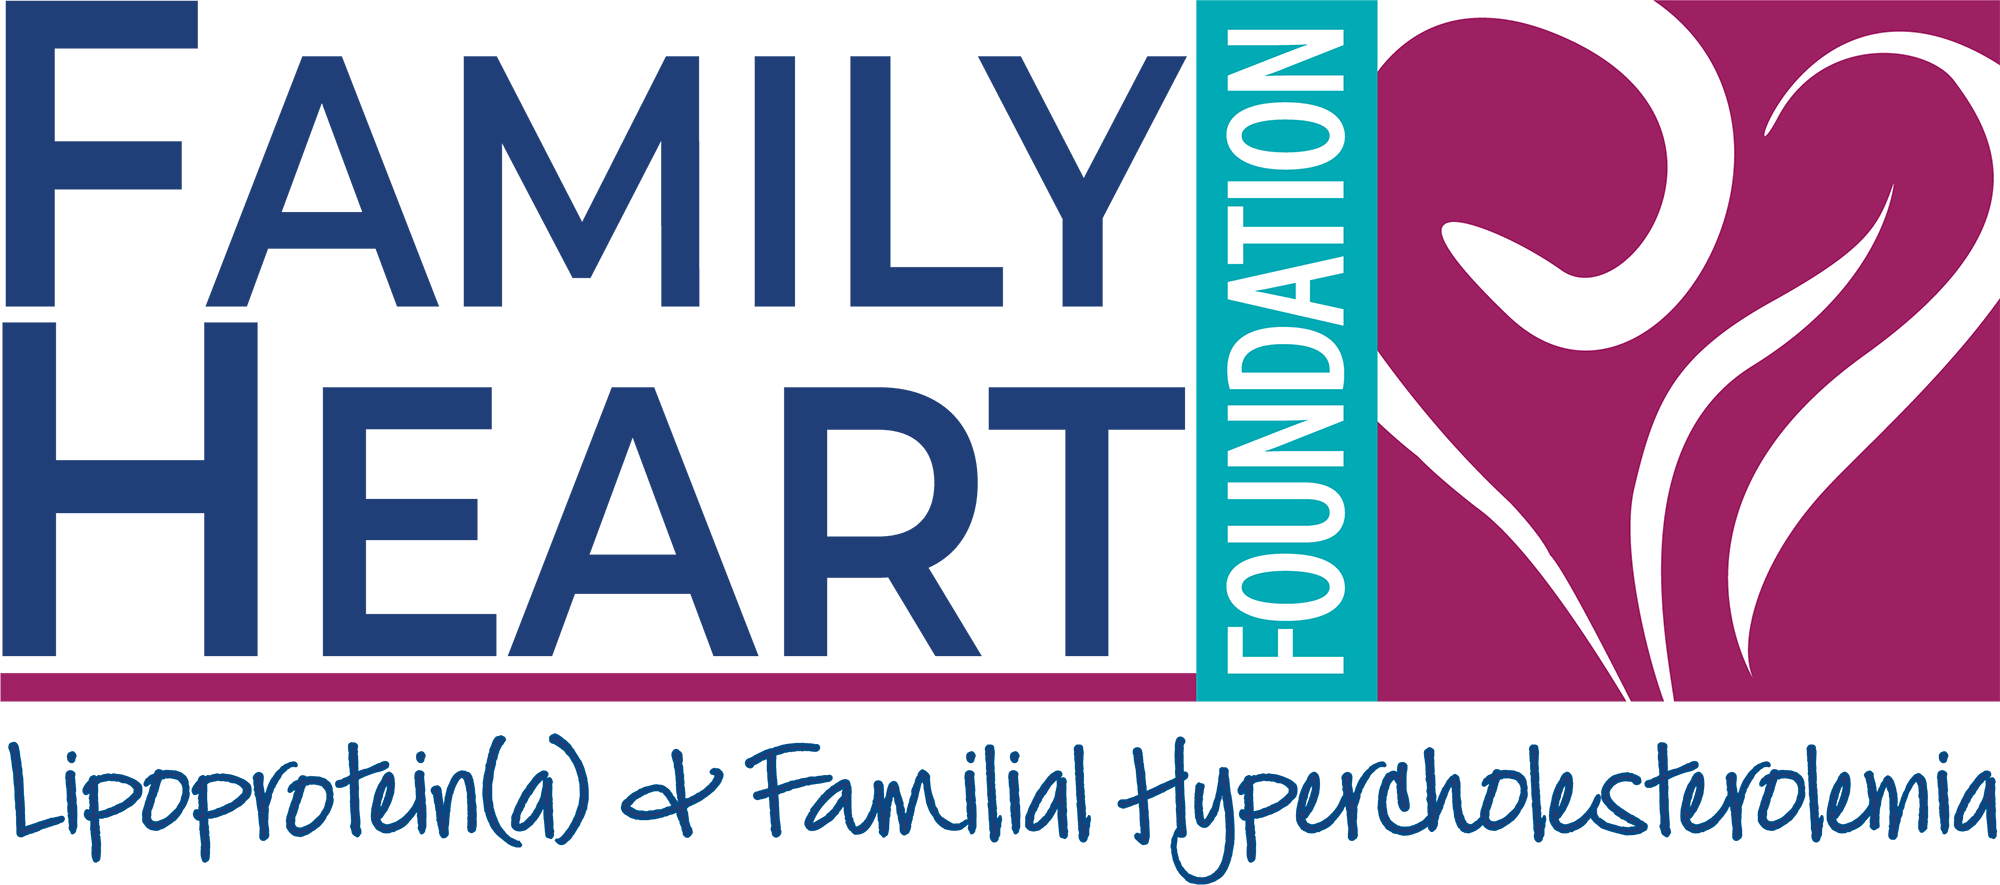 Family Heart Foundation logo